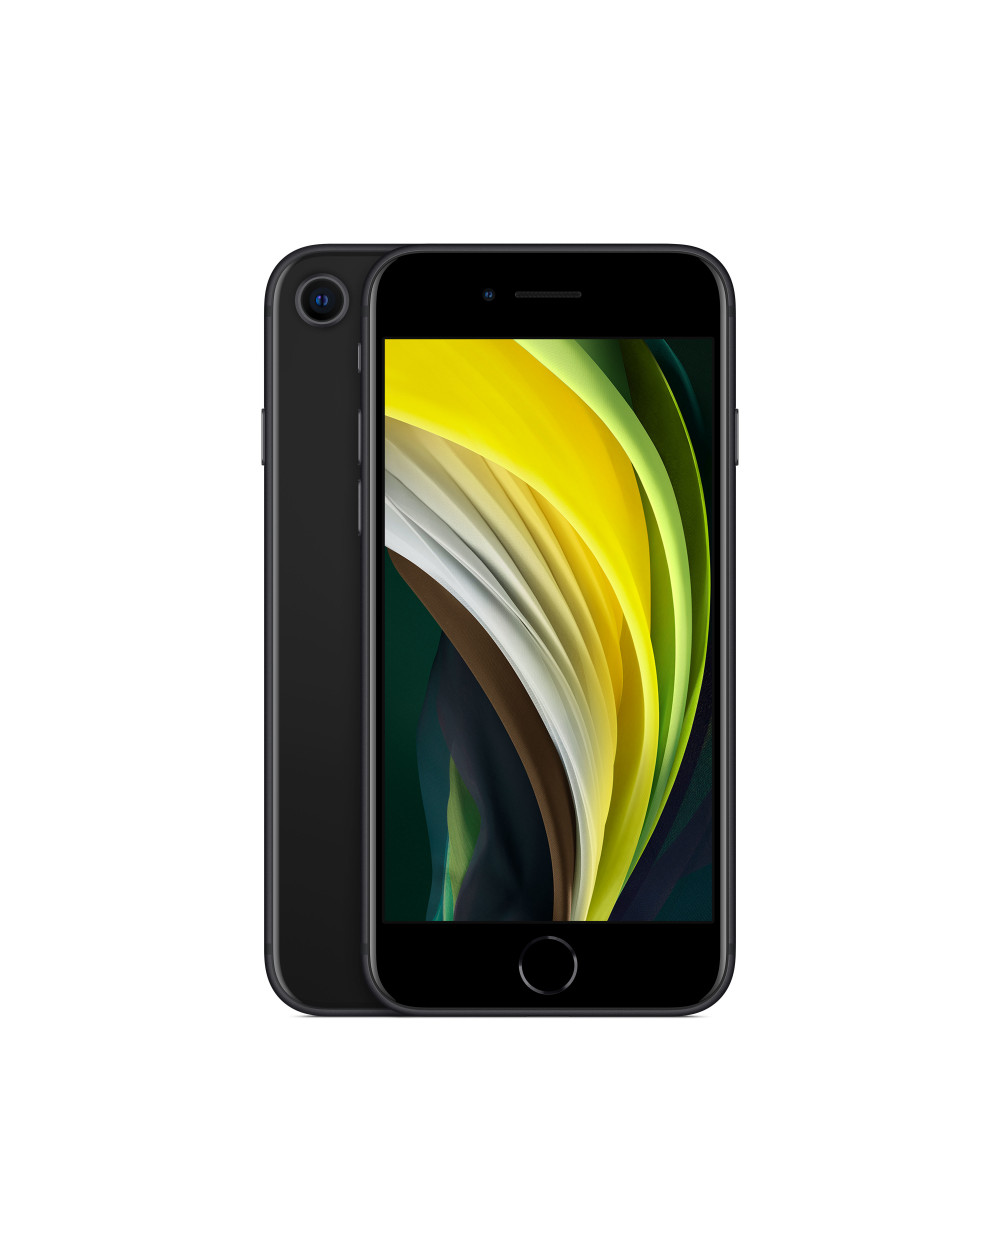 iPhone SE 128GB Black (Con Alimentatore e Cuffie) - VODAFONE imballo  lievemente danneggiato - C&C Shop